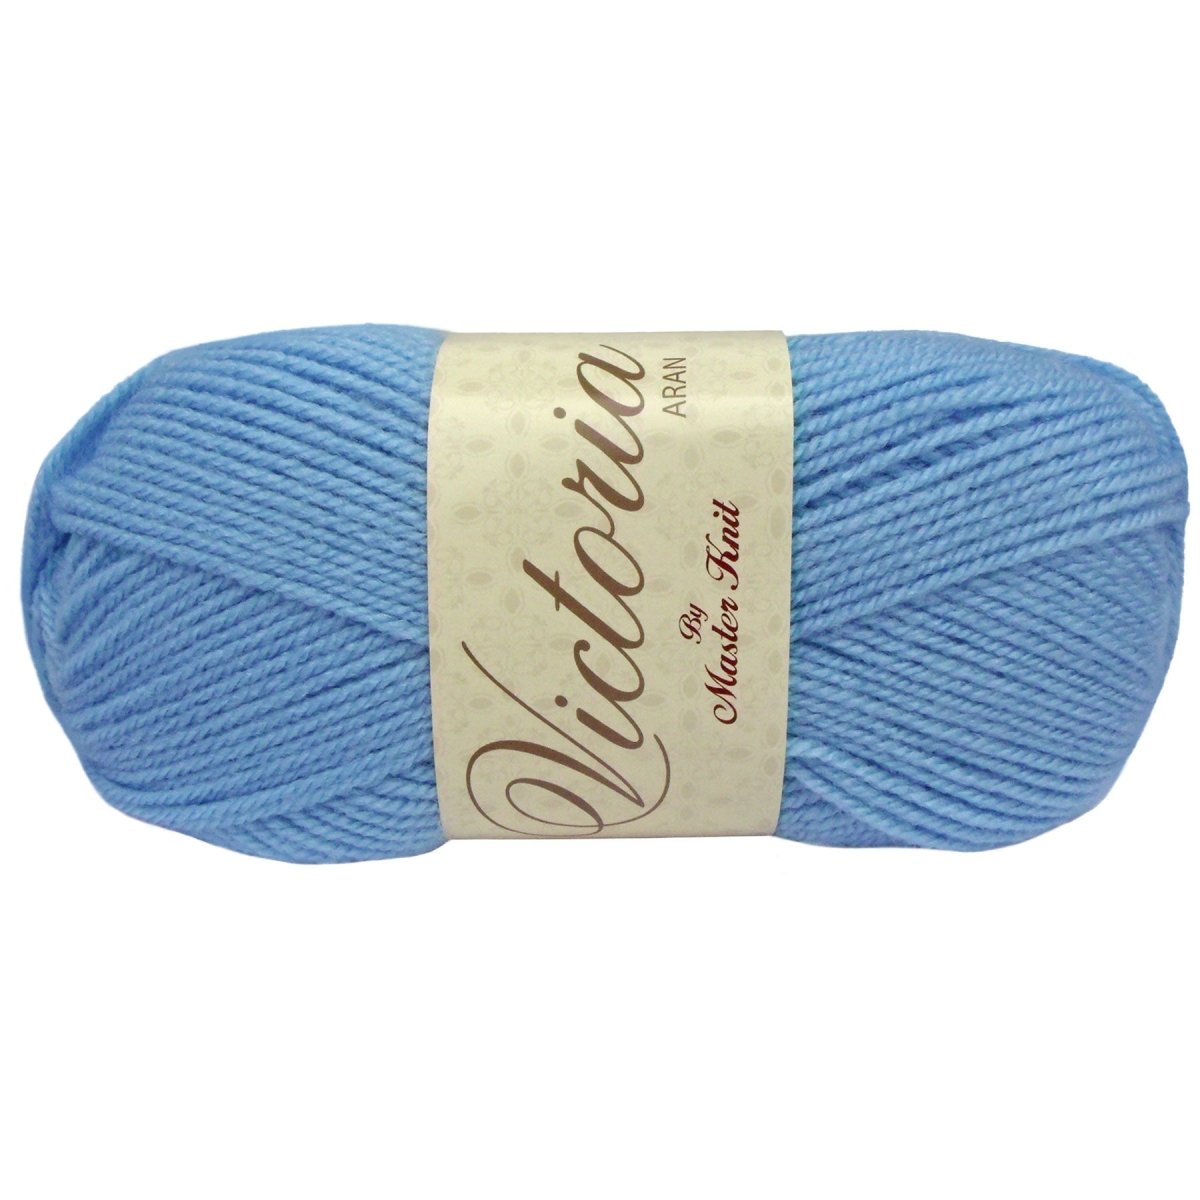 VICTORIA Aran - Crochetstores9120-214acrílico